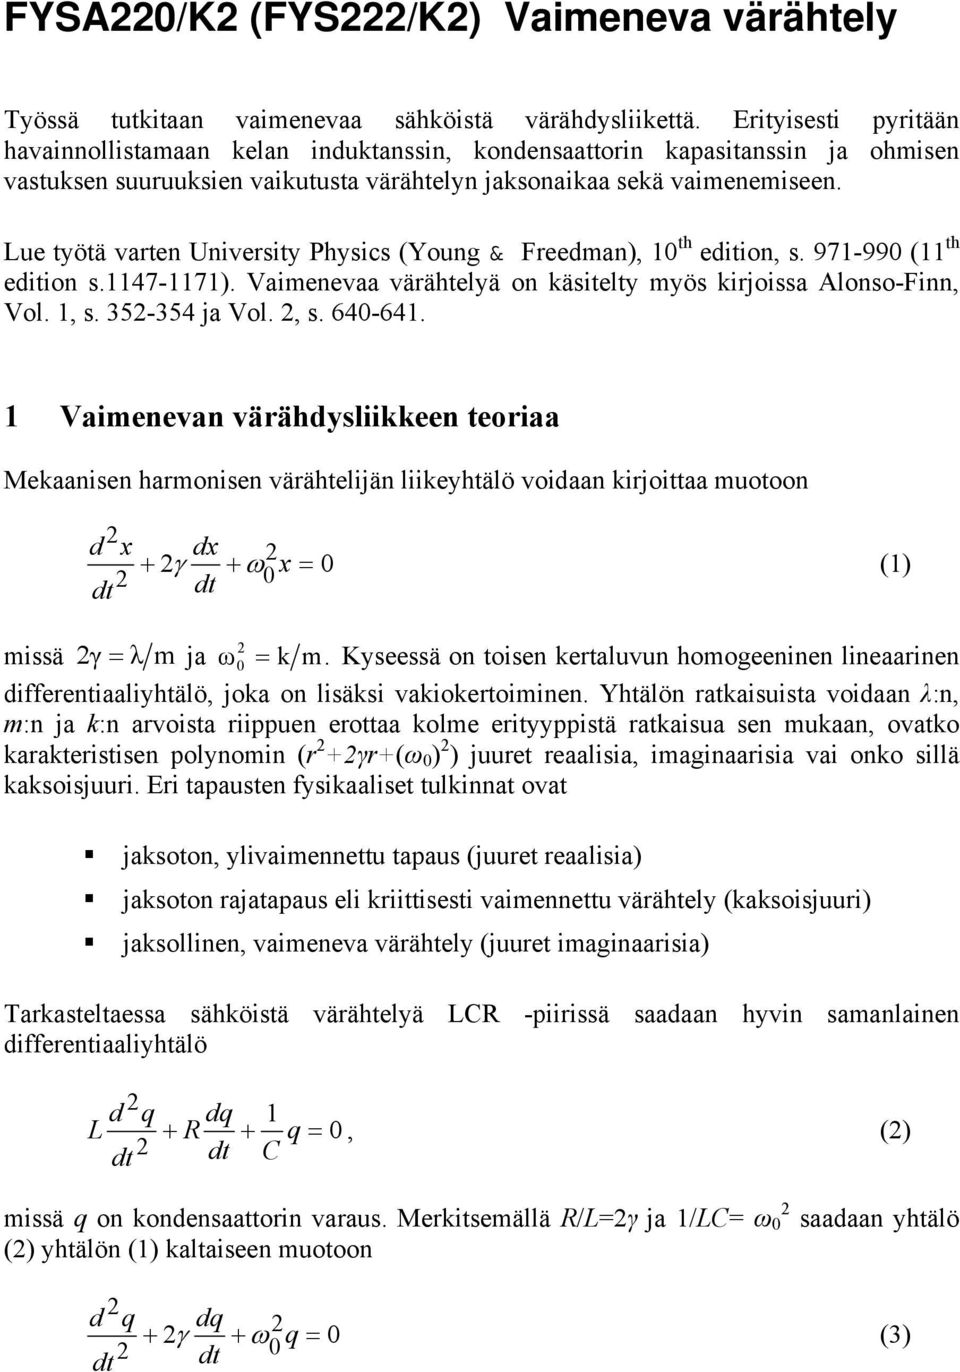 Lue työtä varten University Physics (Young & Freeman), 1 th eition, s. 971-99 (11 th eition s.1147-1171). Vaimenevaa värähtelyä on käsitelty myös kirjoissa Alonso-Finn, Vol. 1, s. 35-354 ja Vol., s. 64-641.